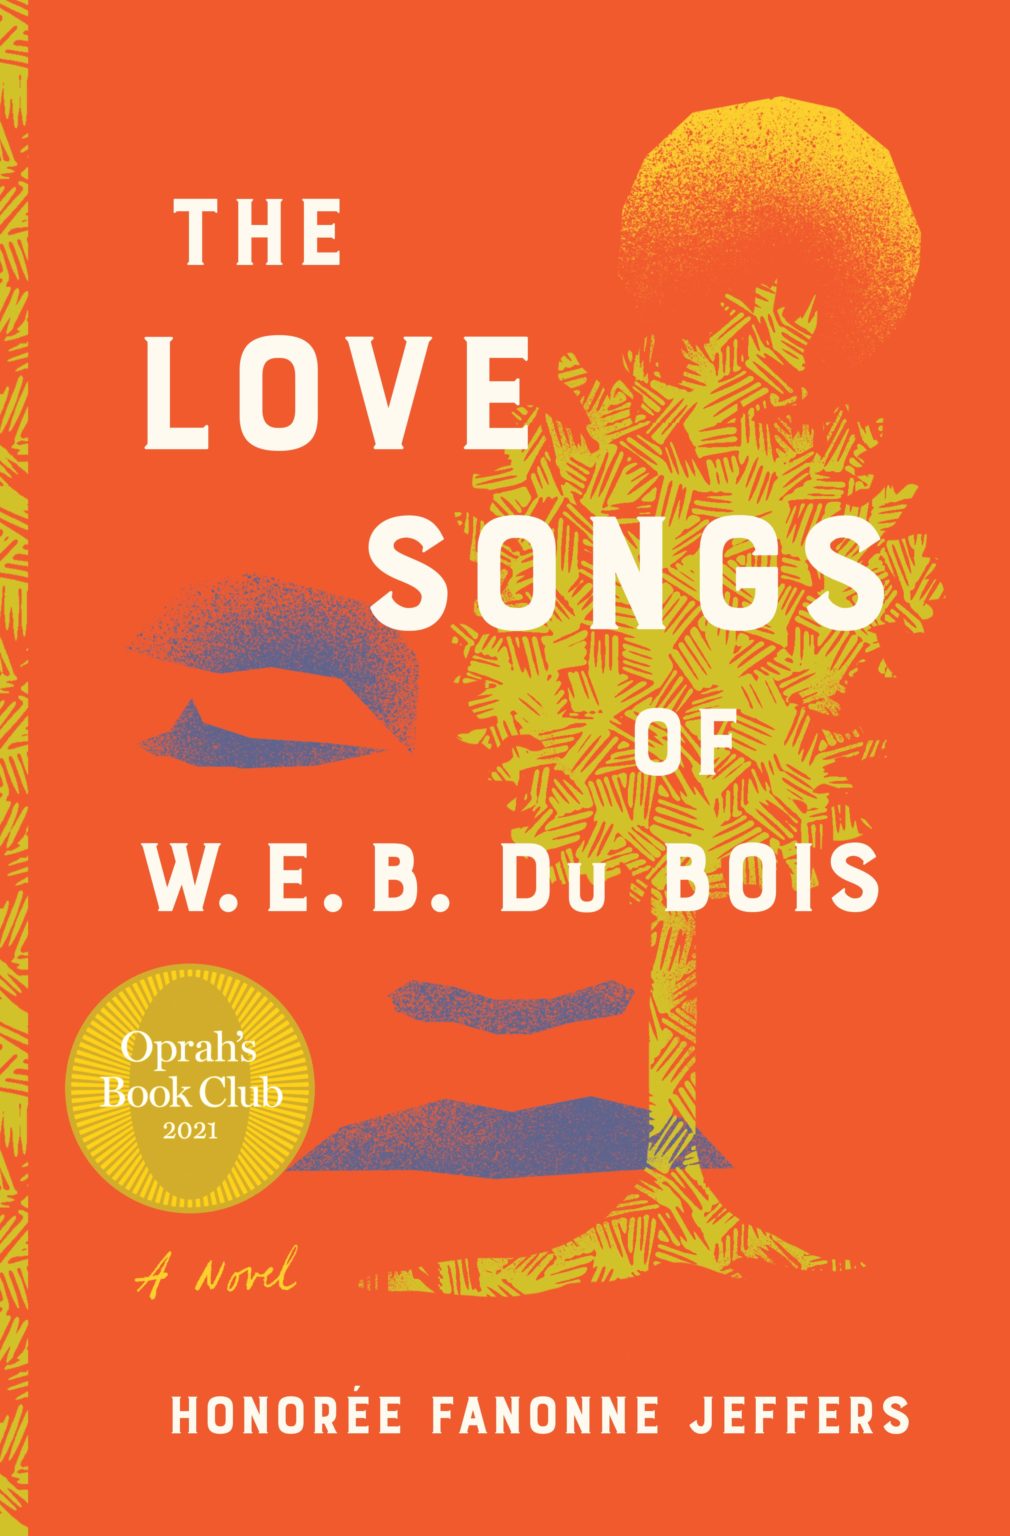 the love songs web dubois